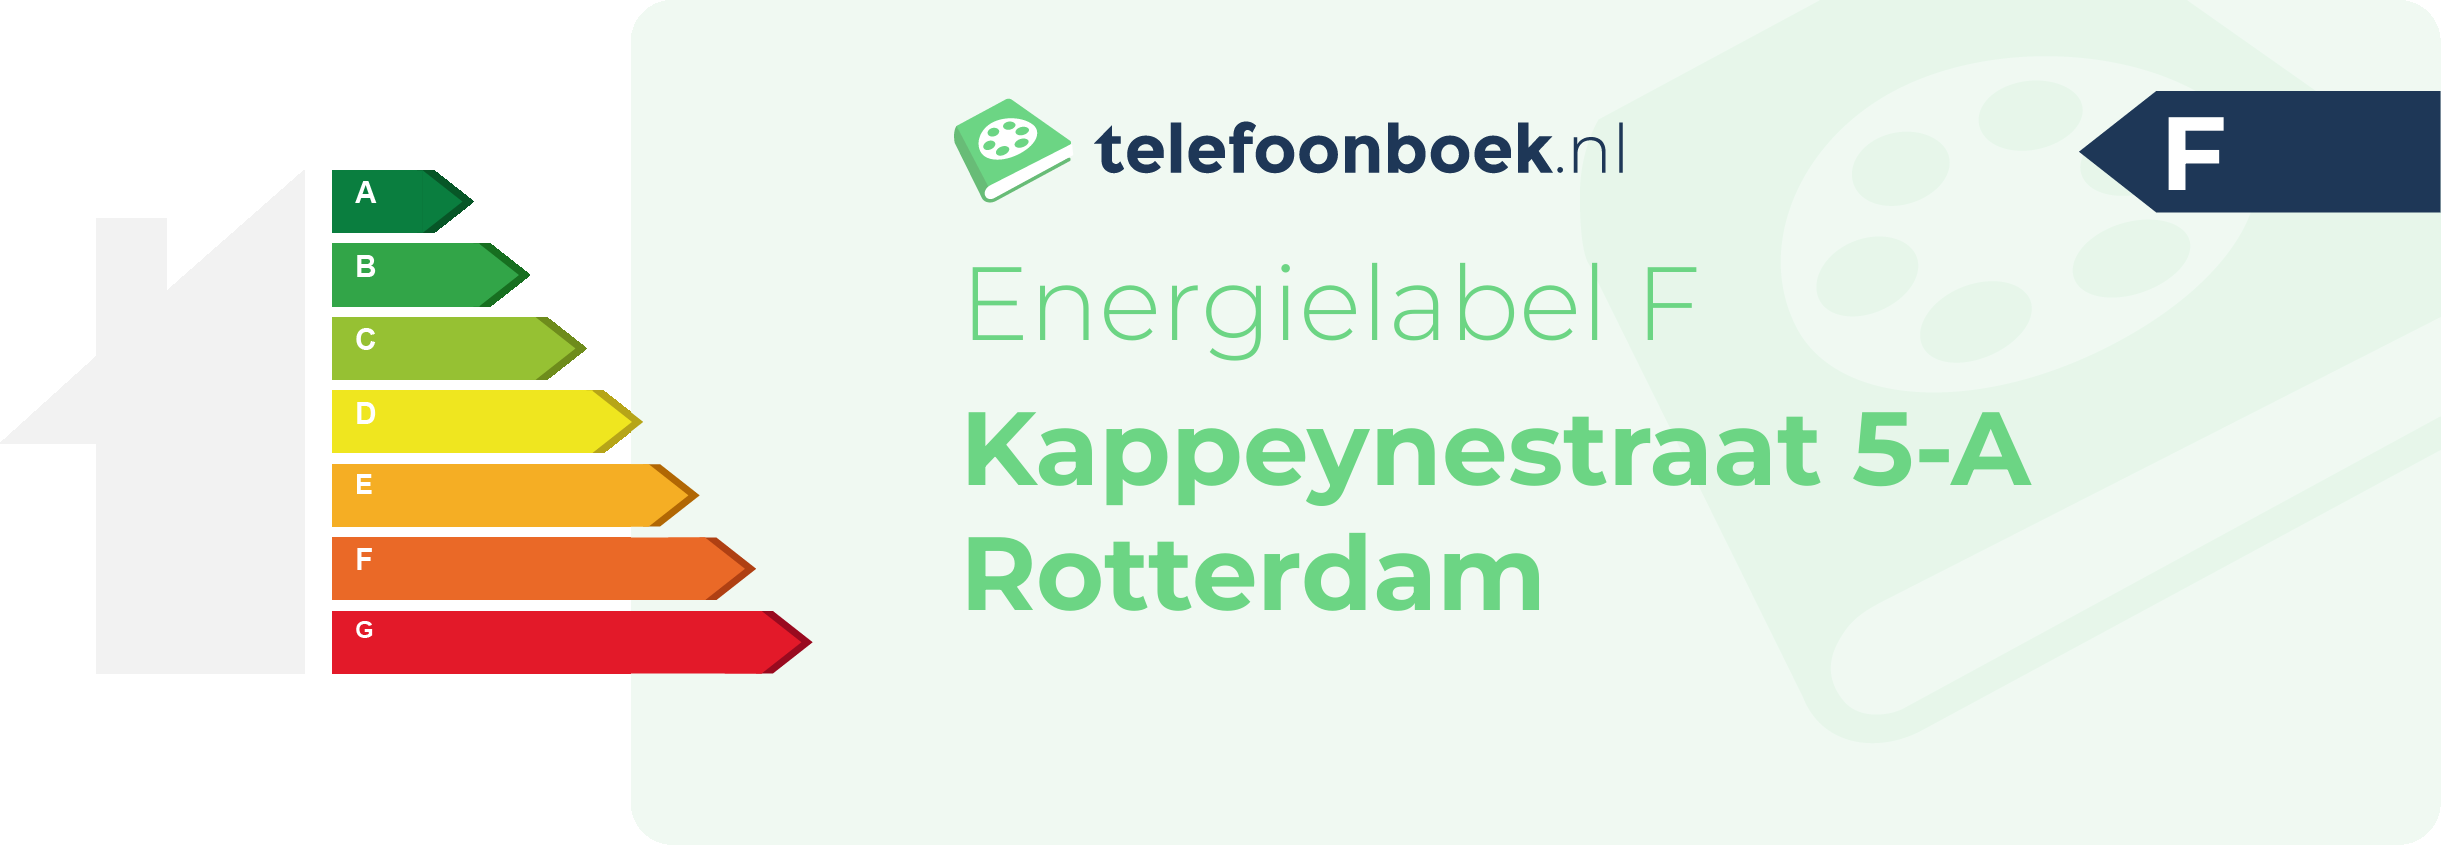 Energielabel Kappeynestraat 5-A Rotterdam